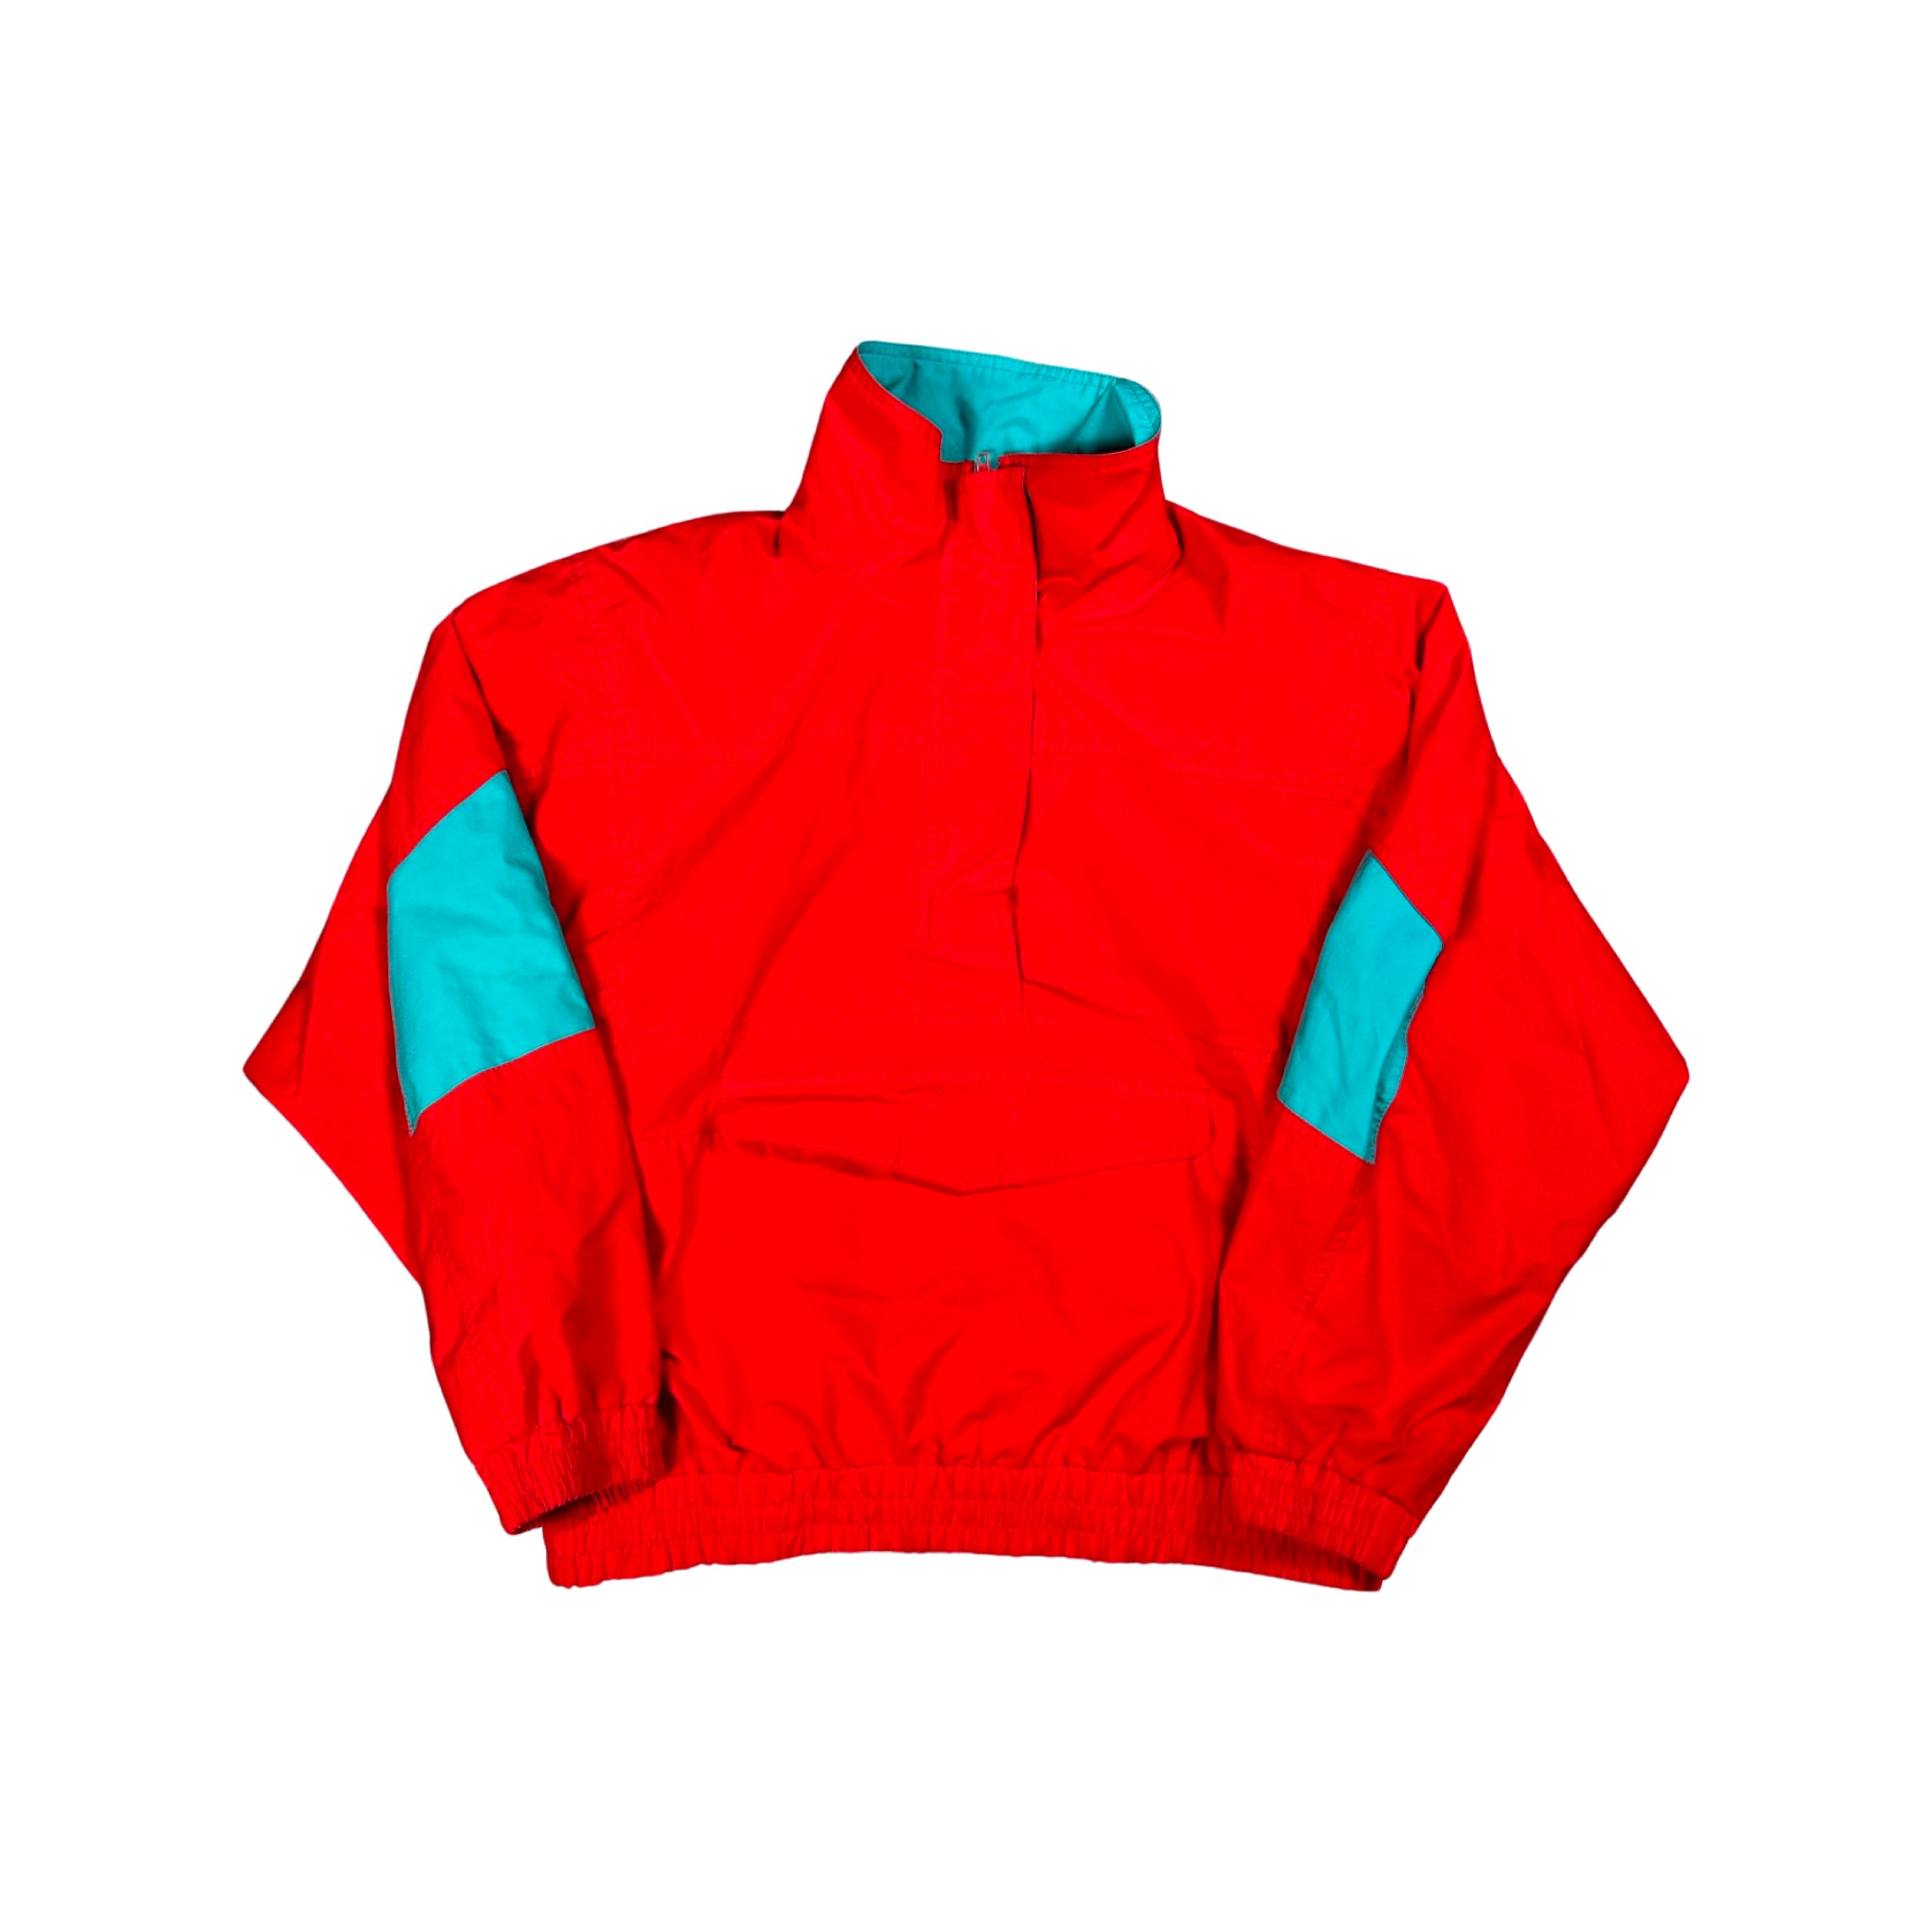 Red Eddie Bauer 90s Jacket (Medium)